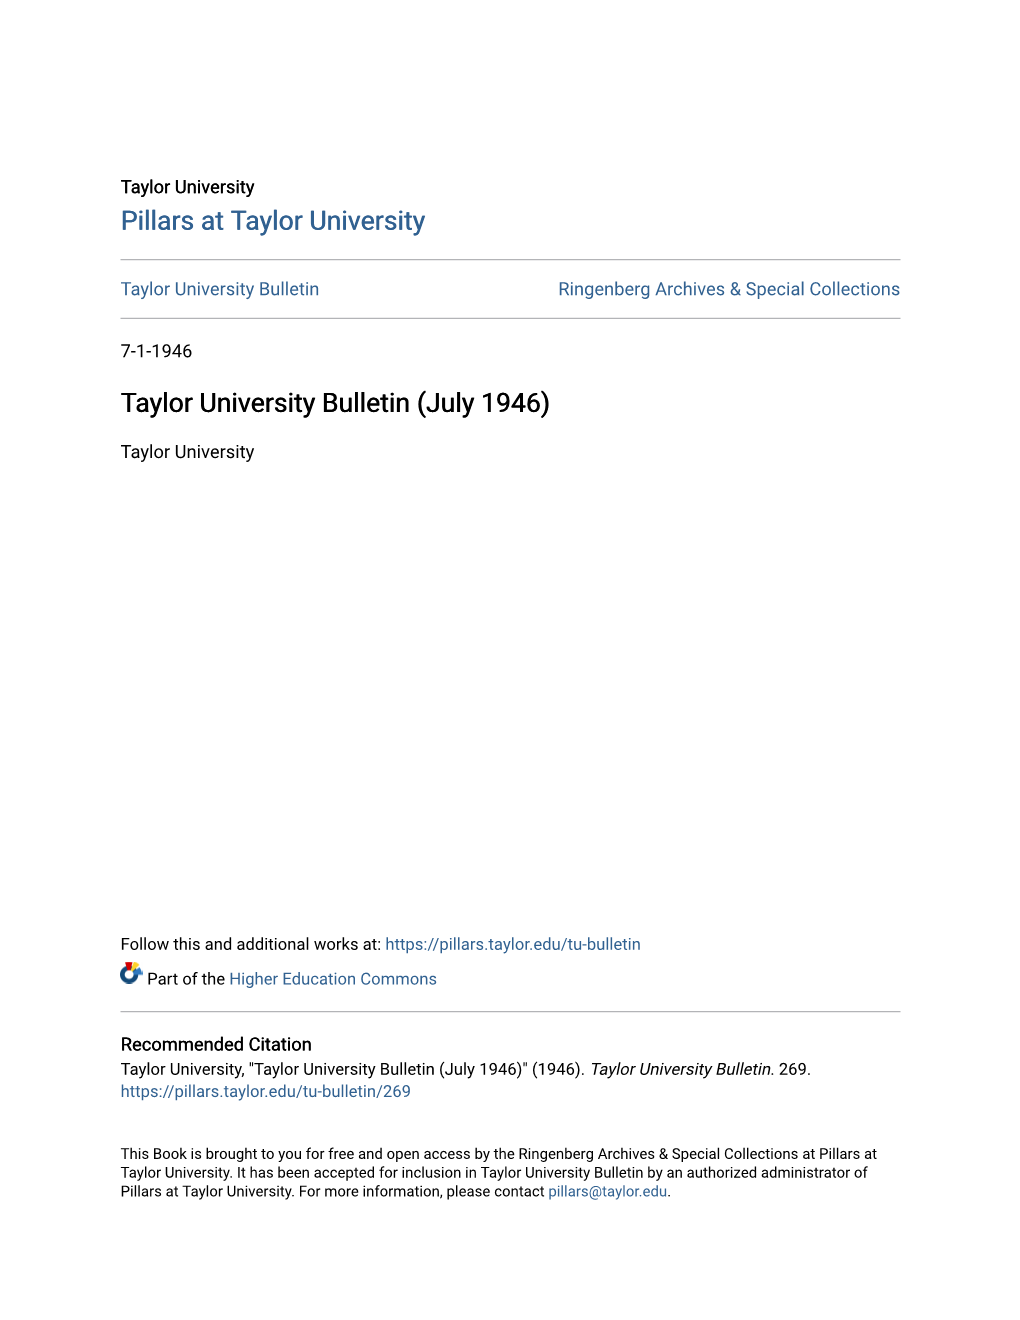 Taylor University Bulletin (July 1946)